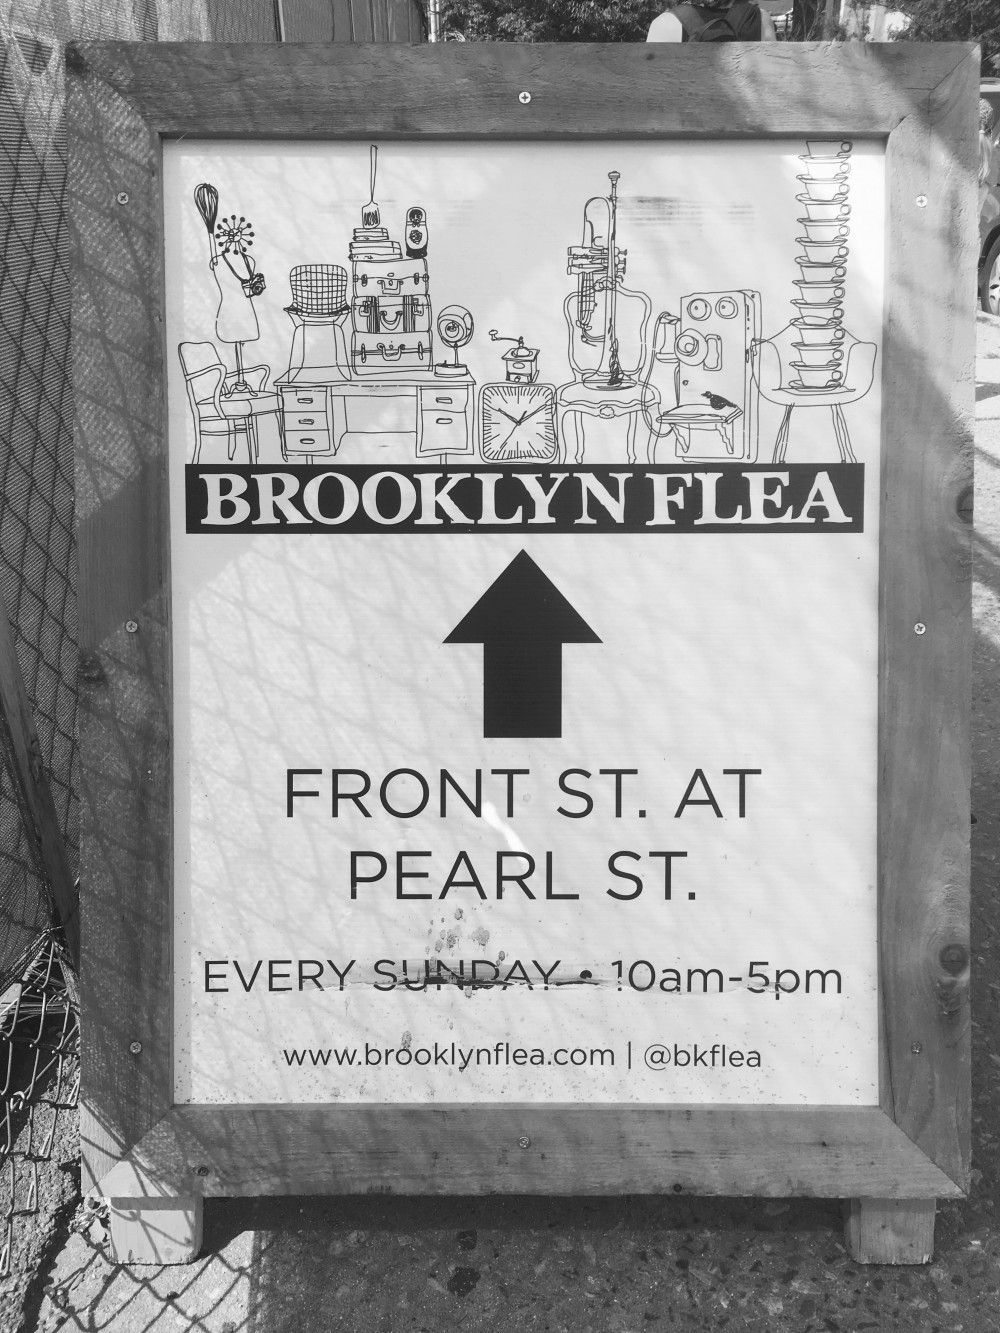 Brooklyn flea